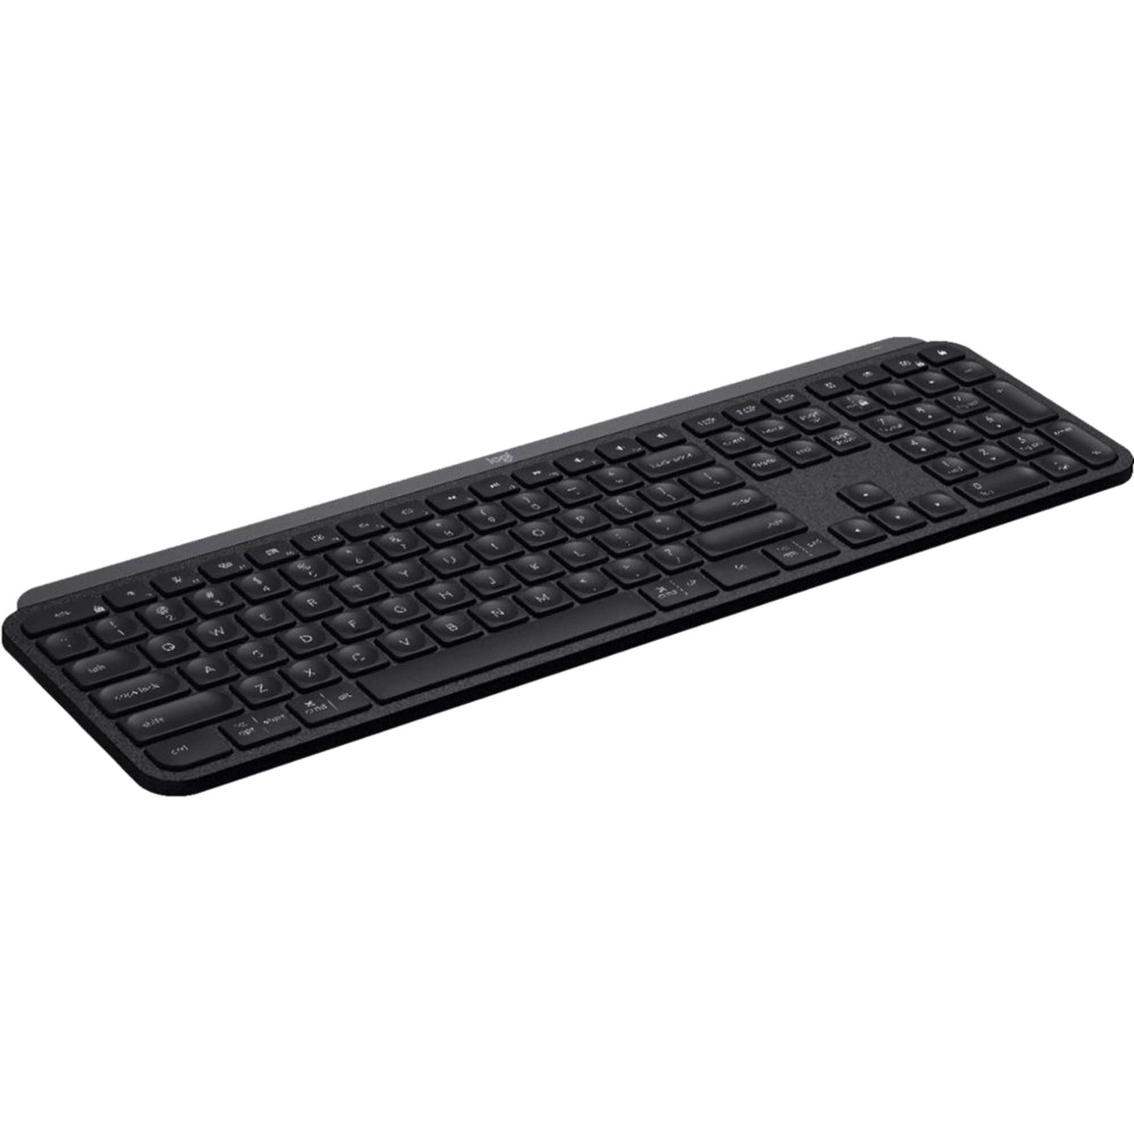 Logitech MX Keys Advanced Wireless Illuminated Keyboard - Image 3 of 4